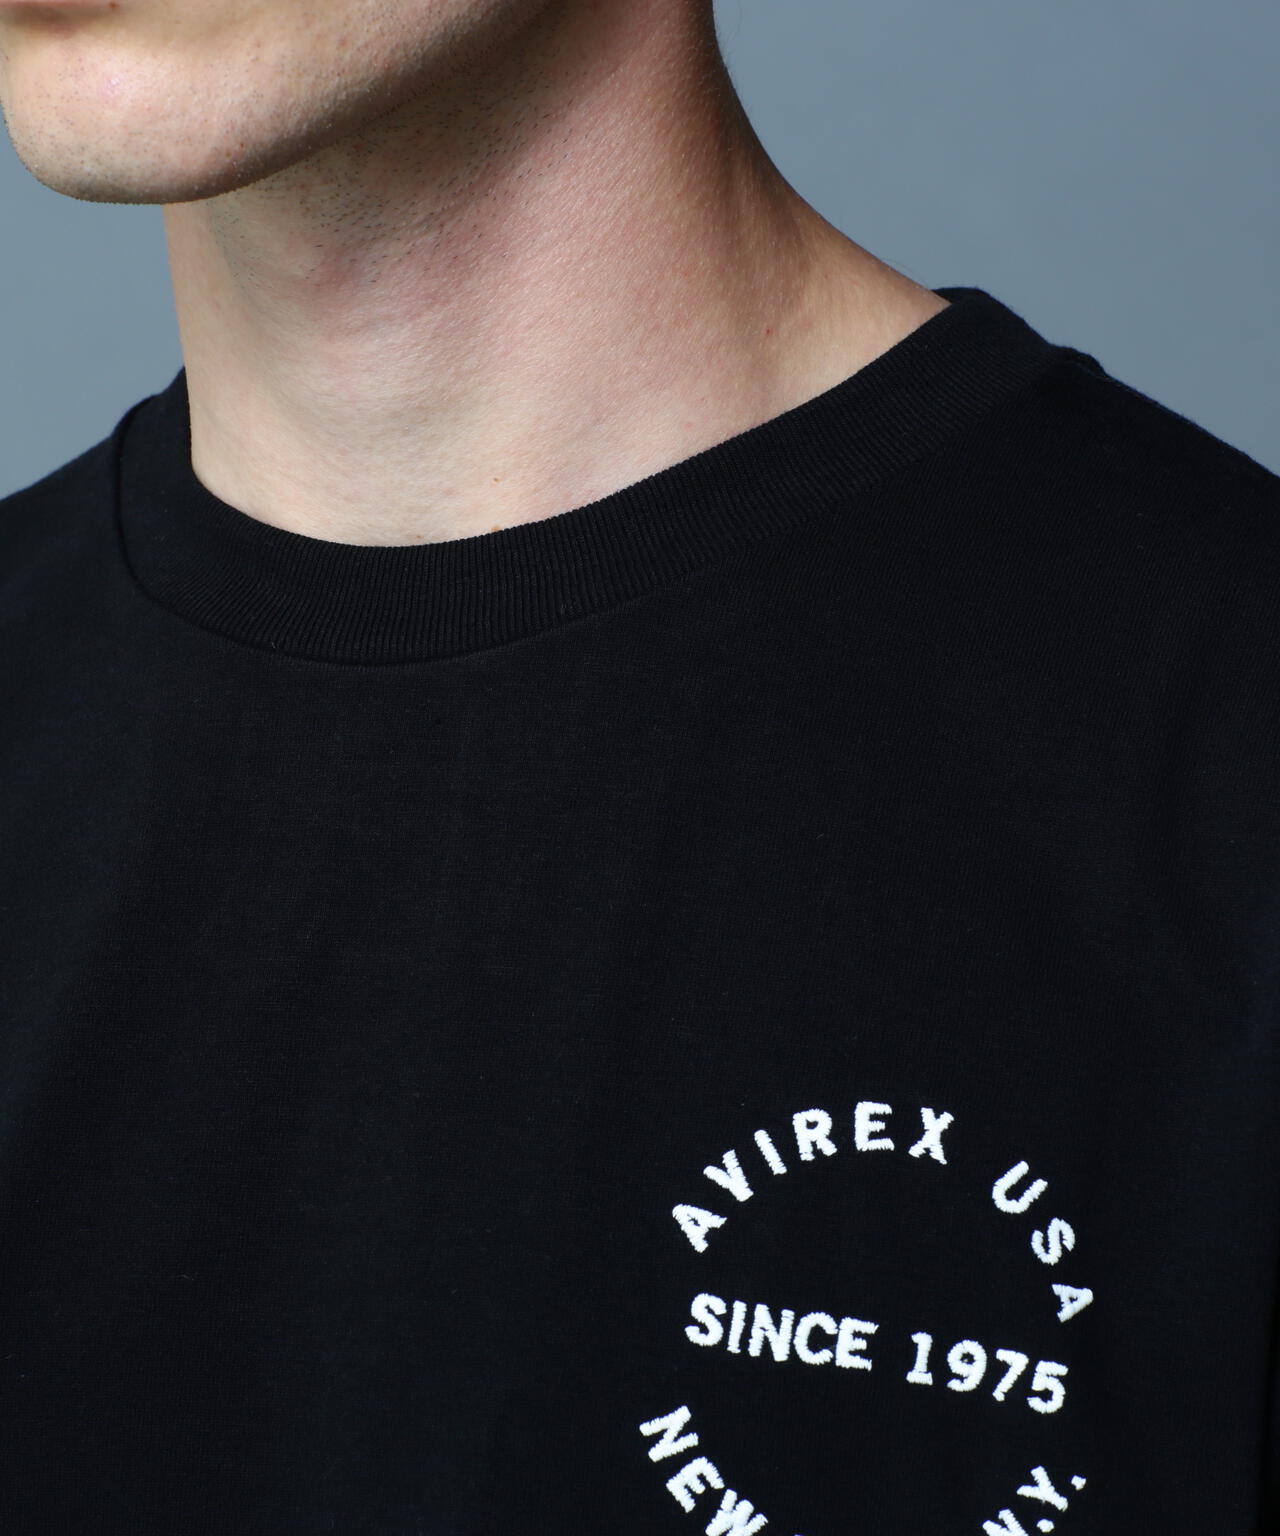 ヴァーシティー ロゴ Tシャツ2.0/VARSITY LOGO T-SHIRT 2.0 | AVIREX 